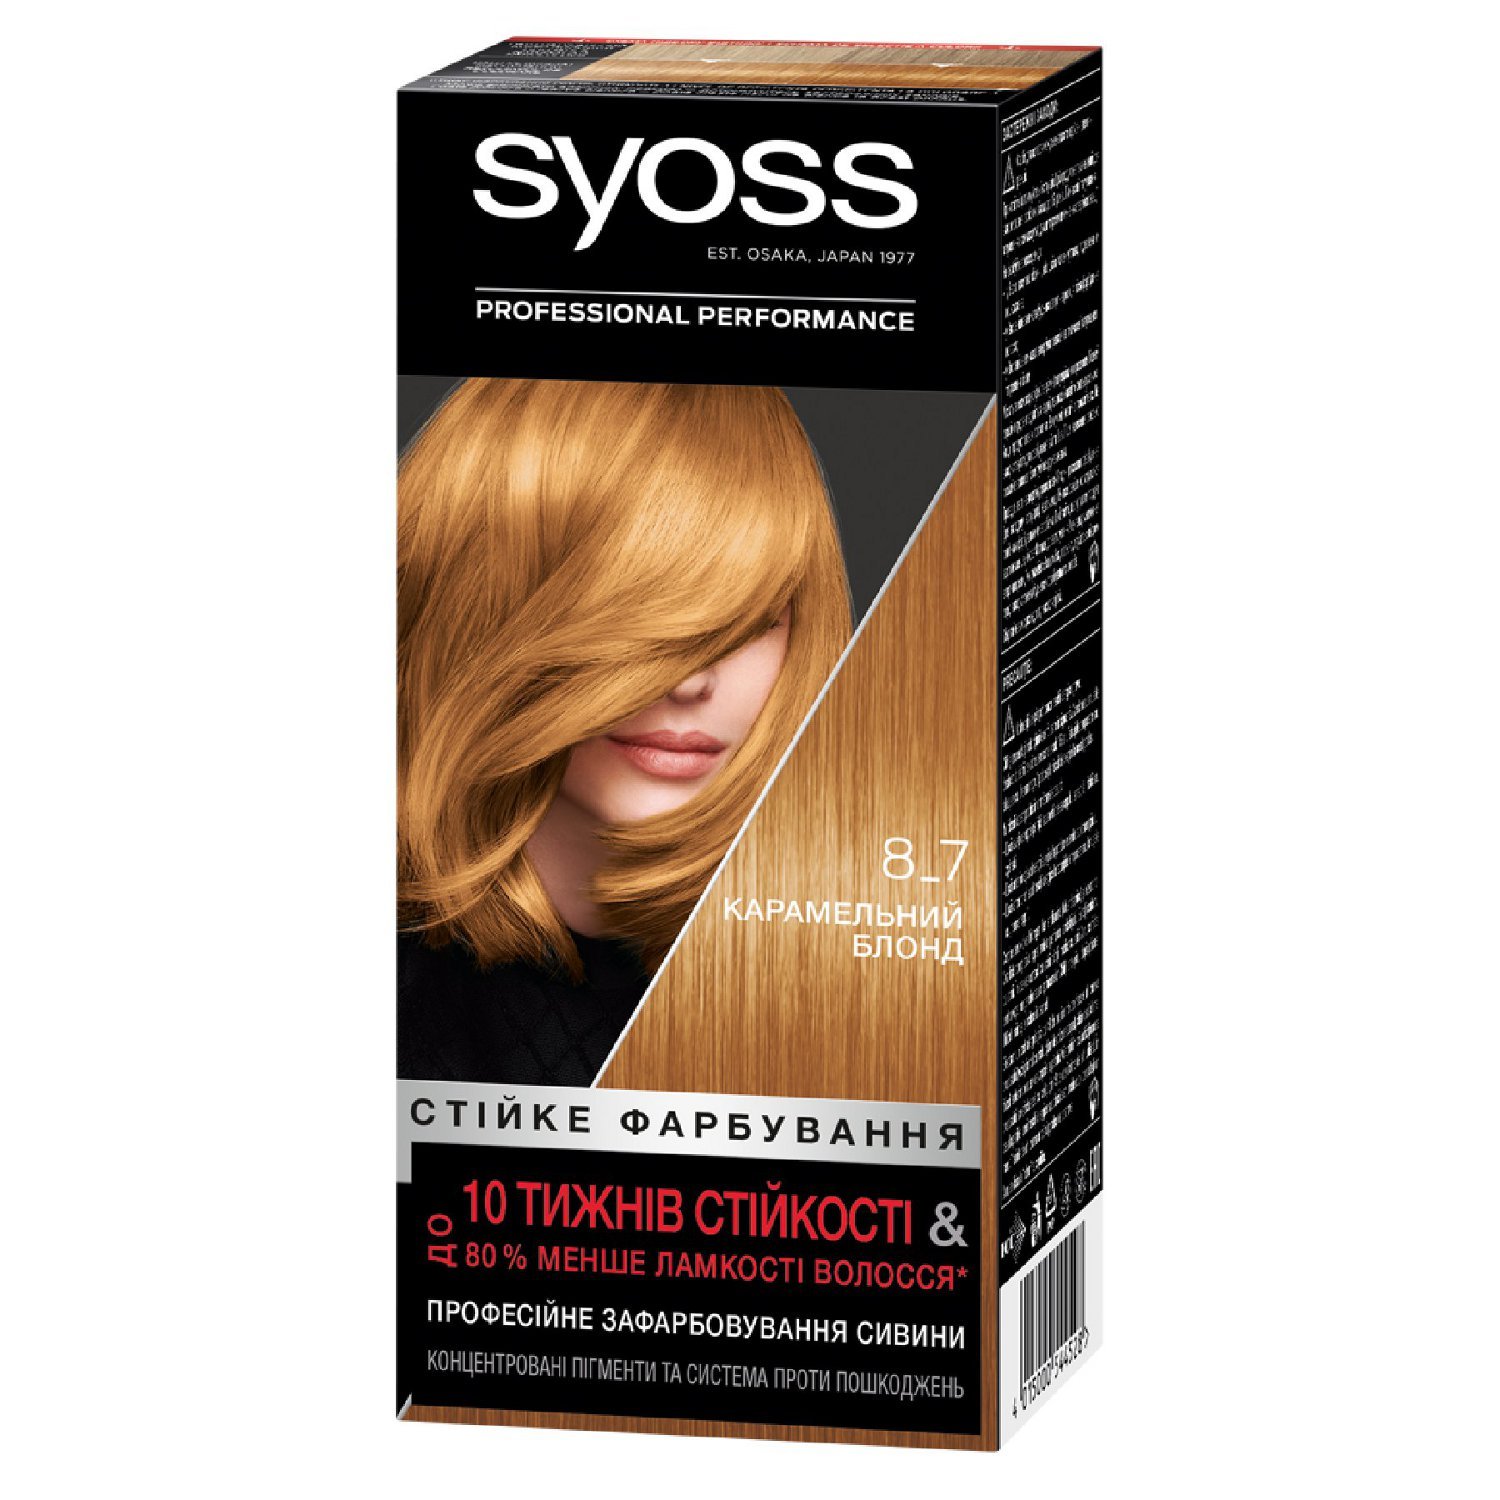 Краска для волос Syoss 8-7 Карамельный блонд, 115 мл - фото 1